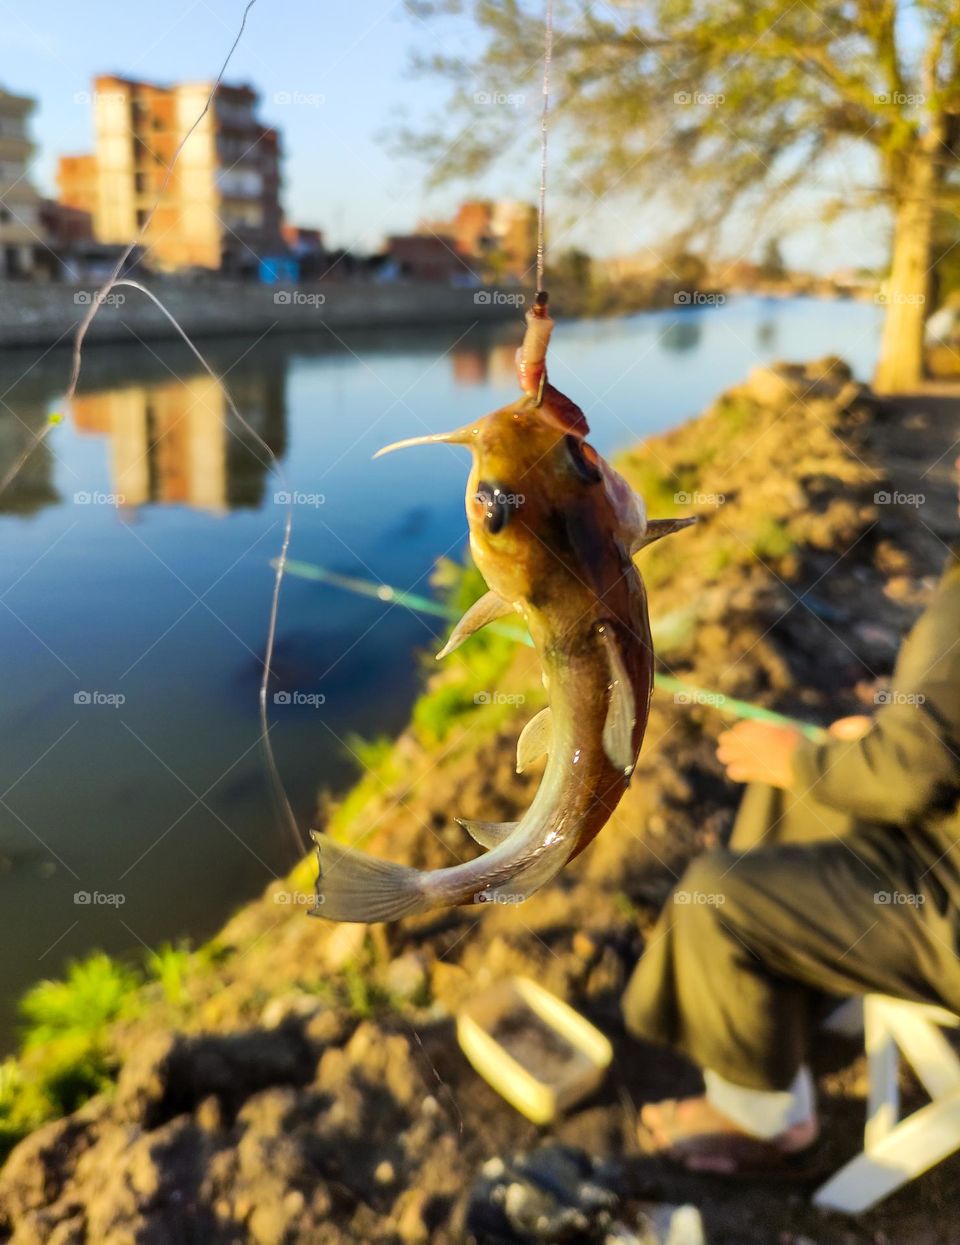 catching a dancing fish